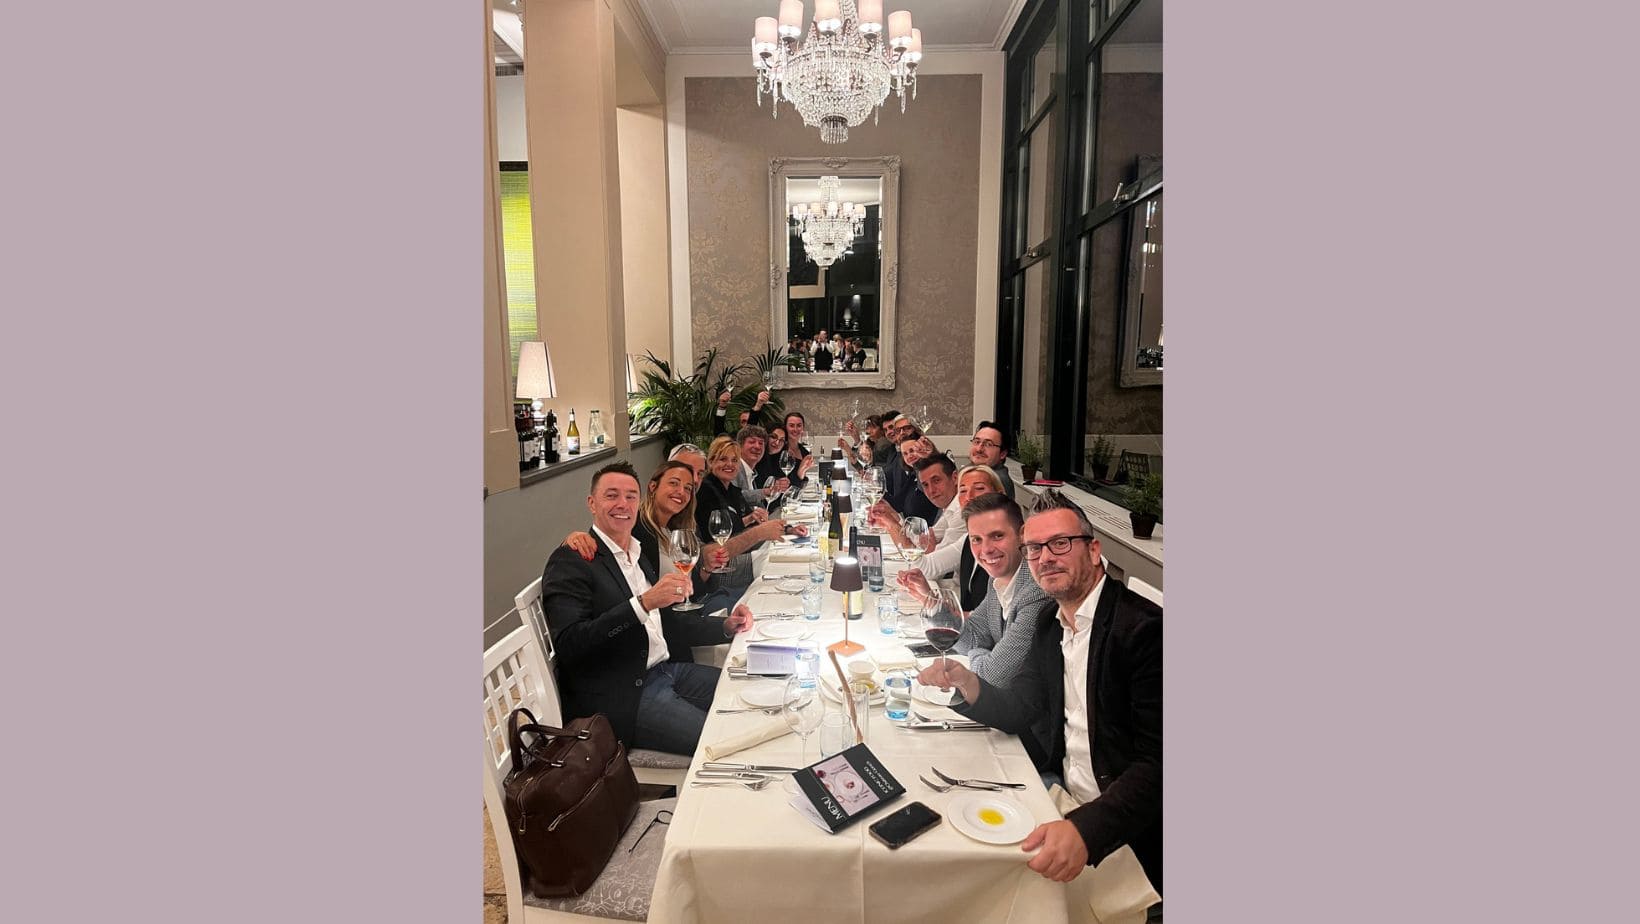 La cena con alcuni produttori presenti all’evento organizzato da Global Wine.